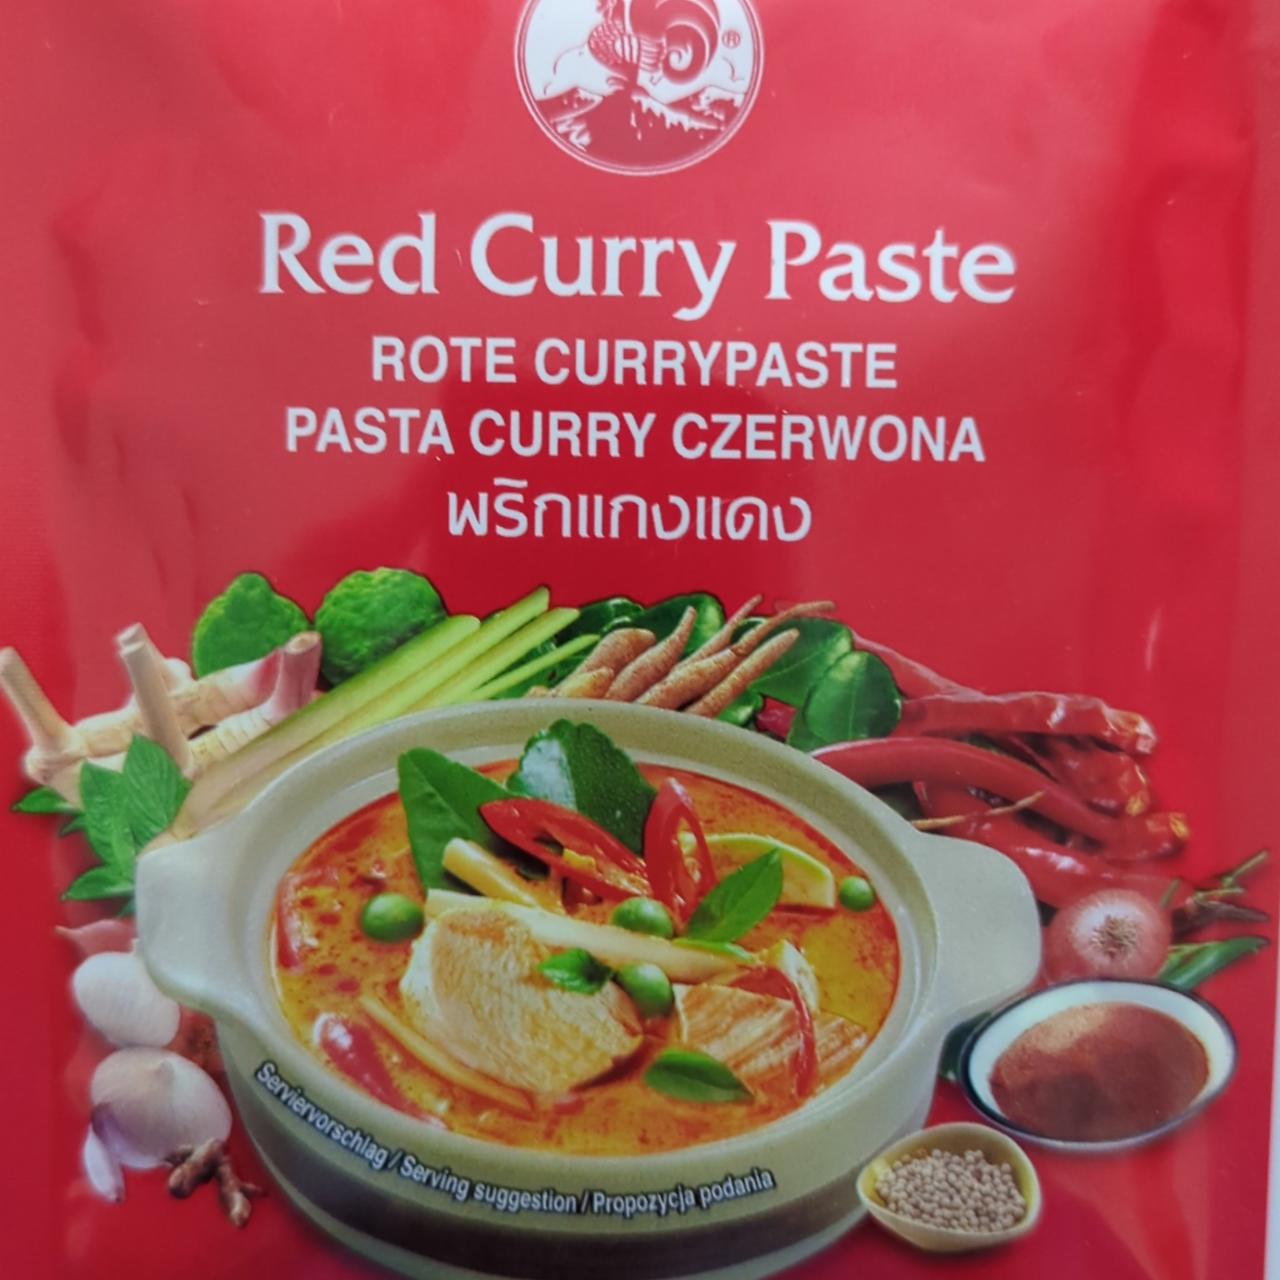 Zdjęcia - Pasta curry czerwona Cock brand